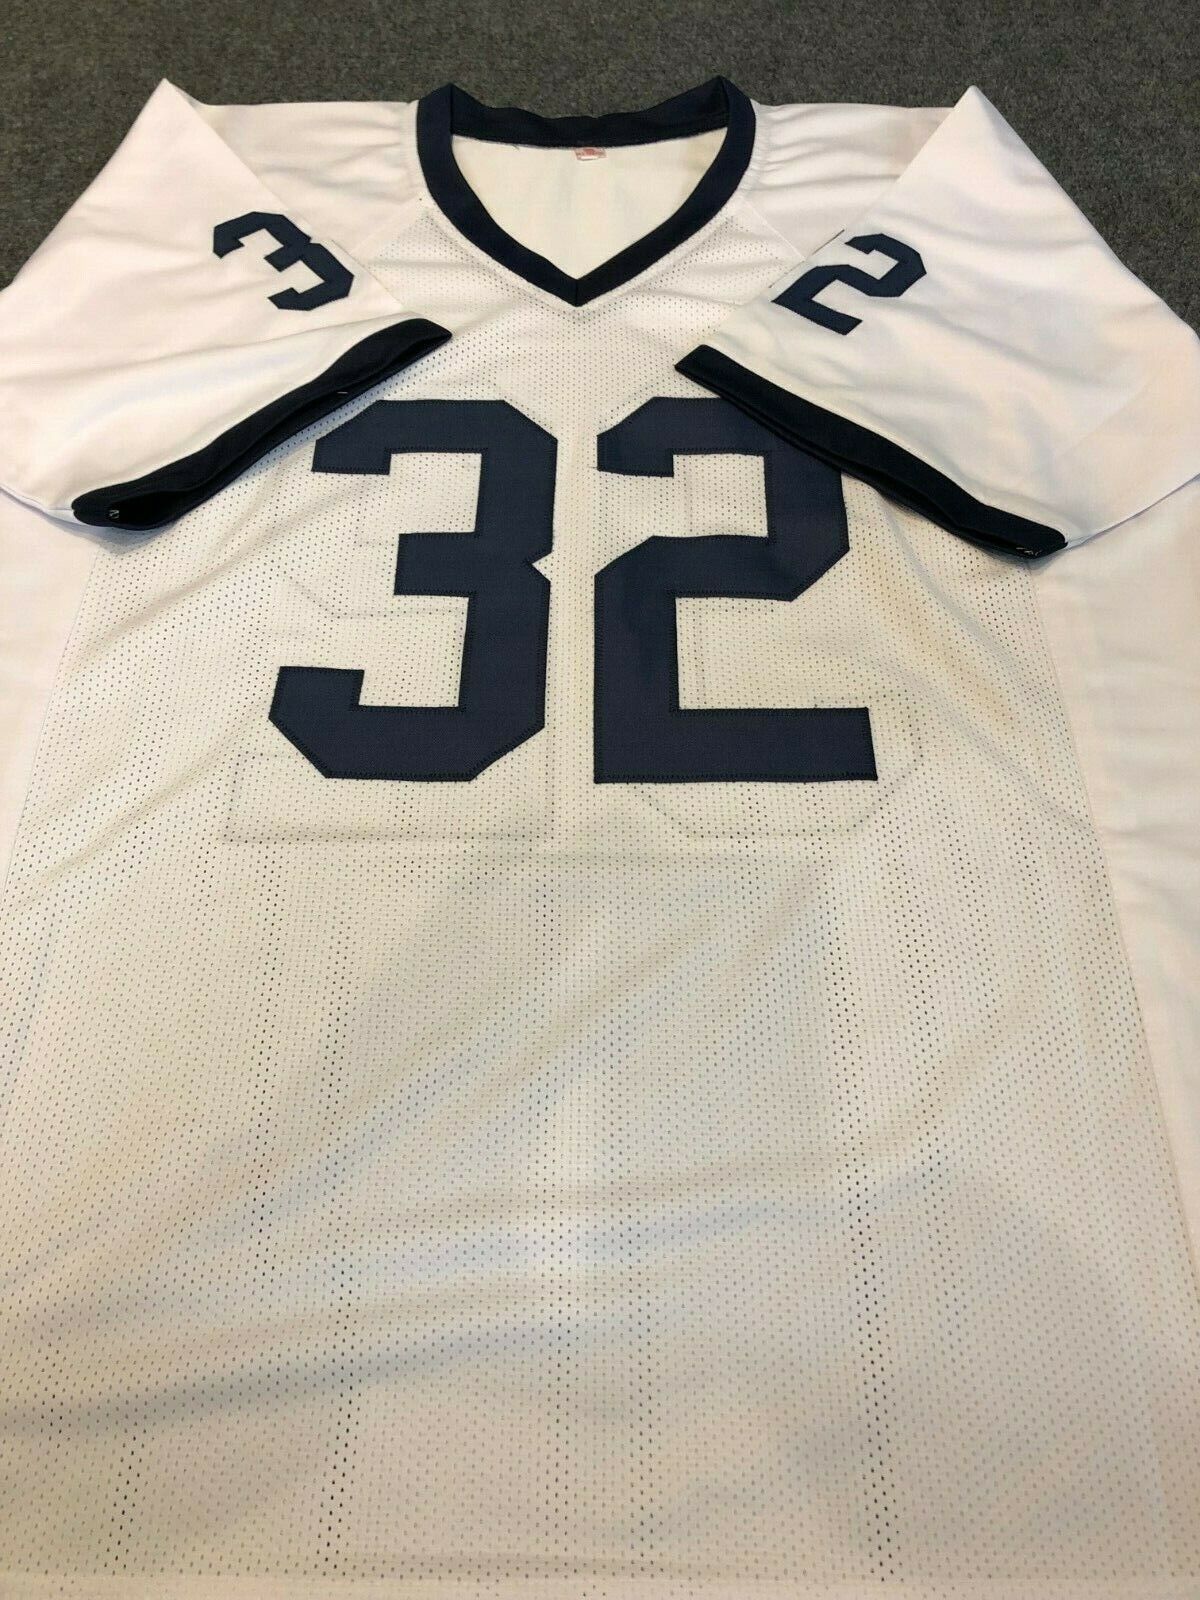 MVP Authentics Penn State Ki-Jana Carter Autographed Signed Jersey Jsa Coa 143.10 sports jersey framing , jersey framing